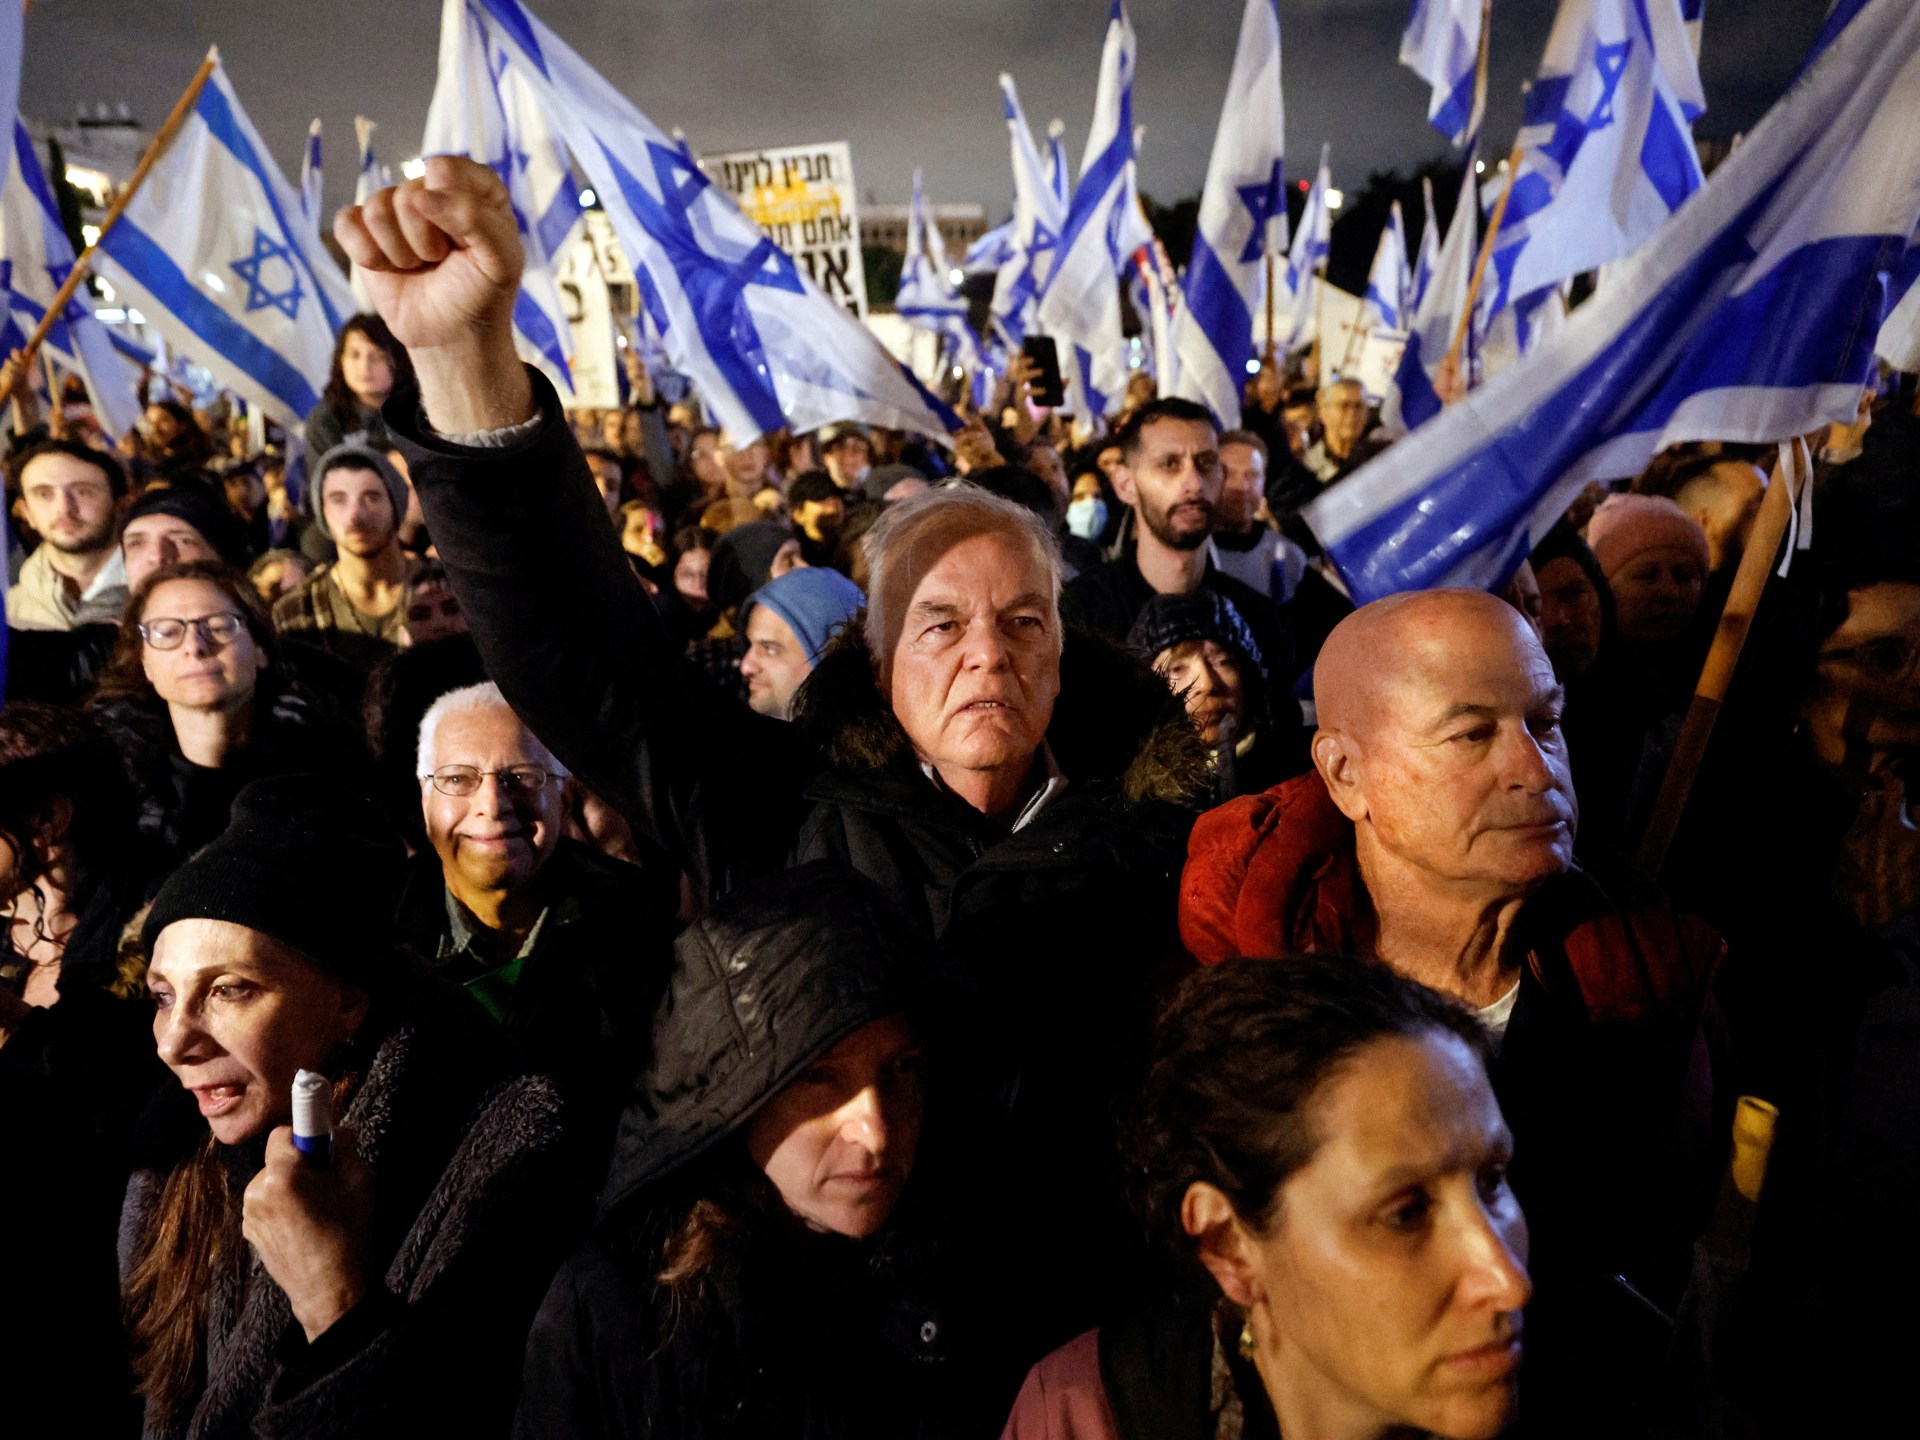 Desítky tisíc Izraelců protestují proti Netanjahuovým právním reformám |  Protestní zprávy